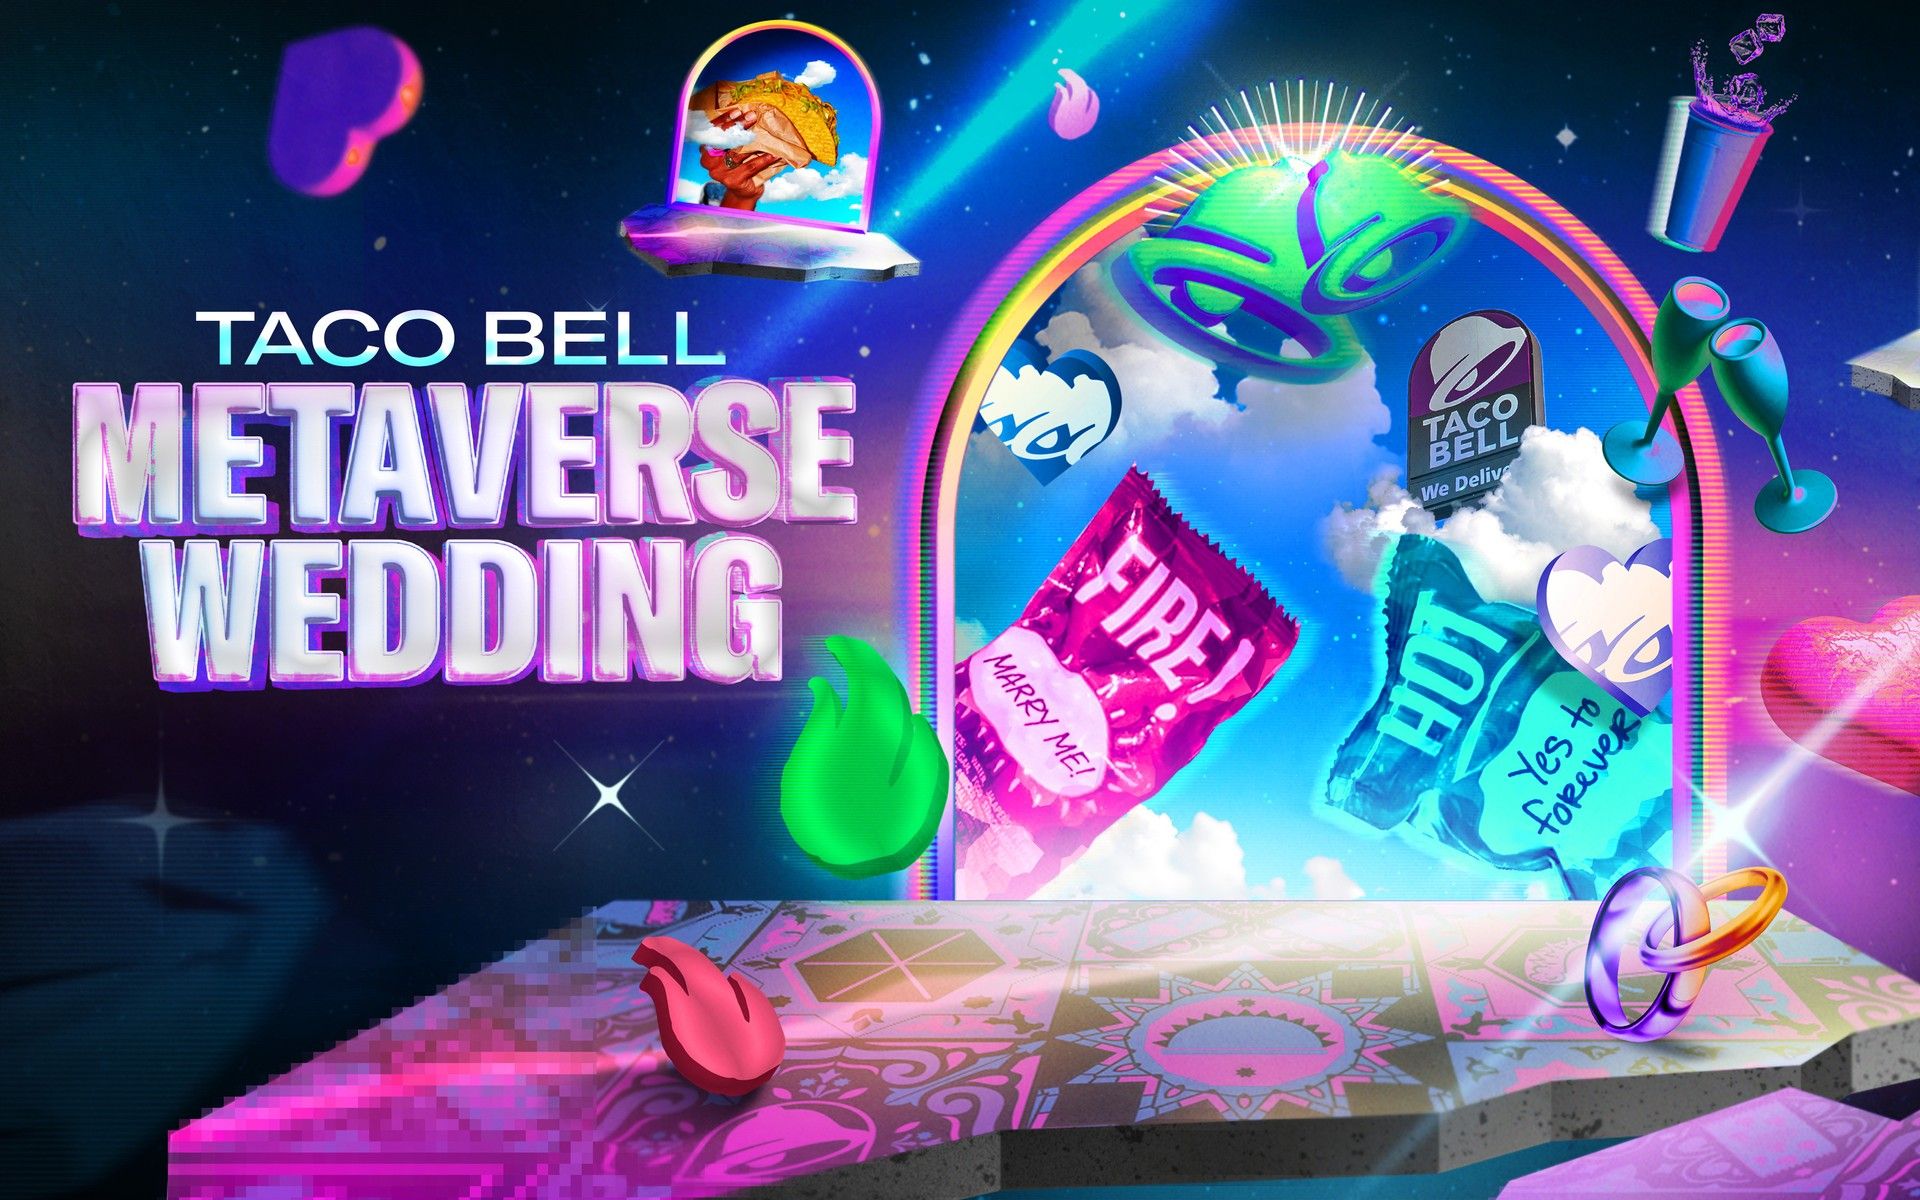 Die Geschichte der Hochzeit von Taco Bell Metaverse: Von Crunchwrap zu Metaverse